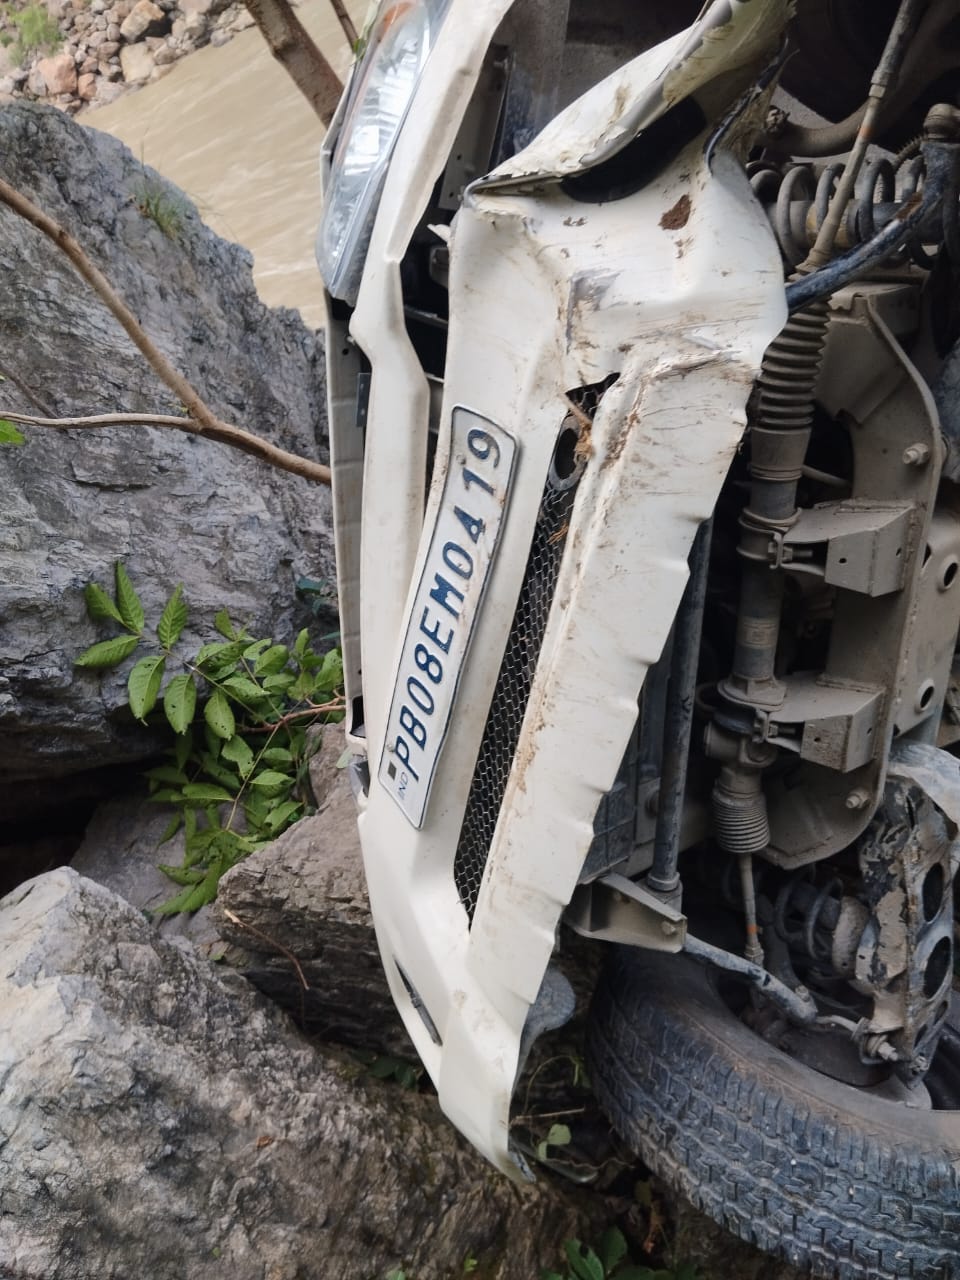 Road accident near Rishikesh in Pauri